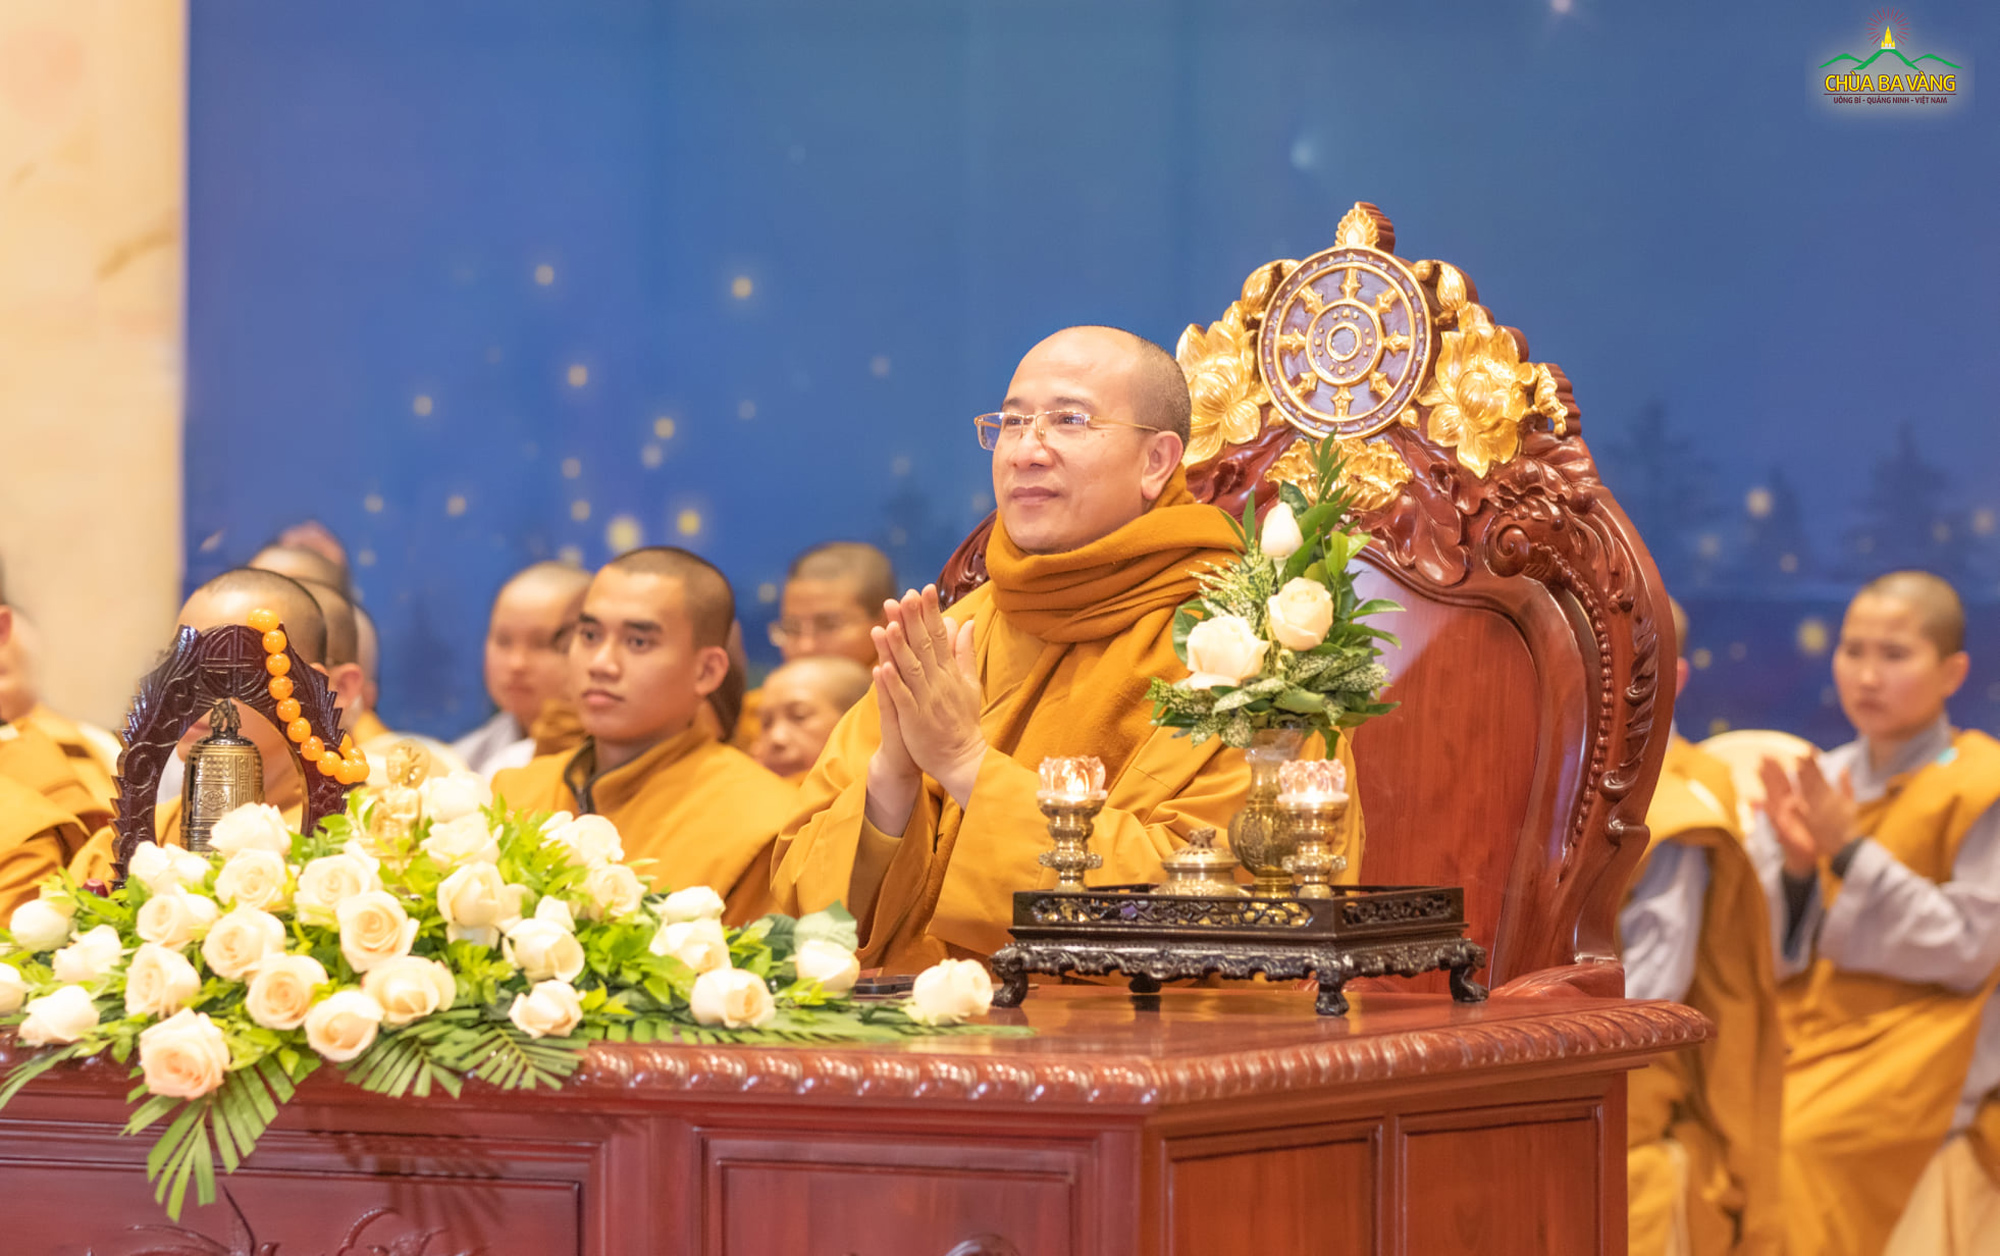 Sư Phụ Thích Trúc Thái Minh quang lâm chứng dự đêm “Ca mừng Đức Phật thành đạo”